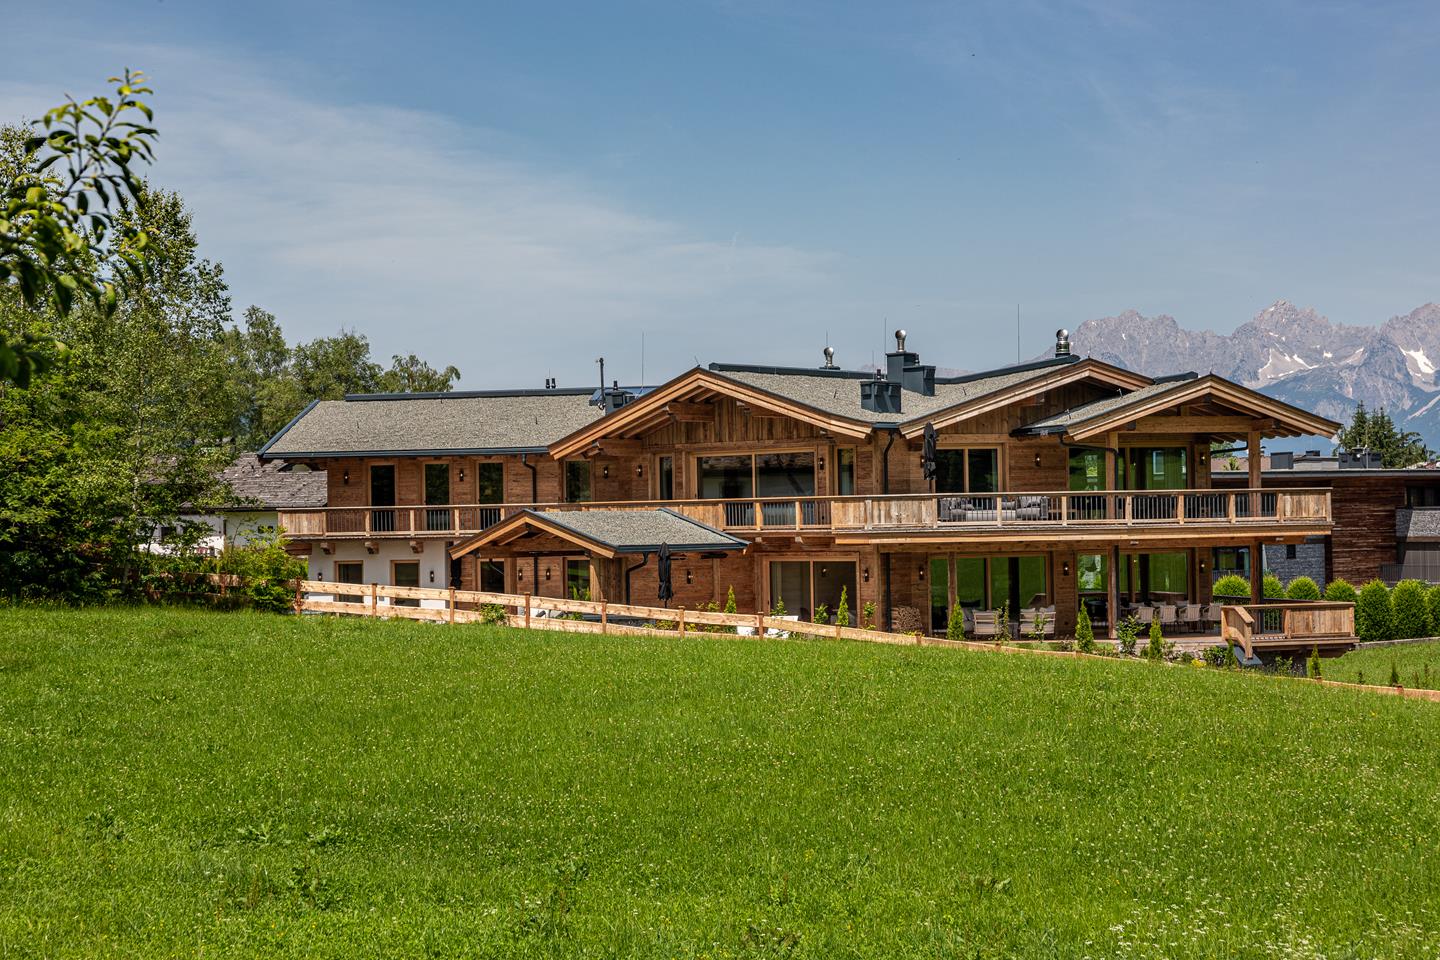 Thaler Bauprojekte - Neubau Wohnhaus "Diamond Hills" in Kitzbühel - Aussenansicht